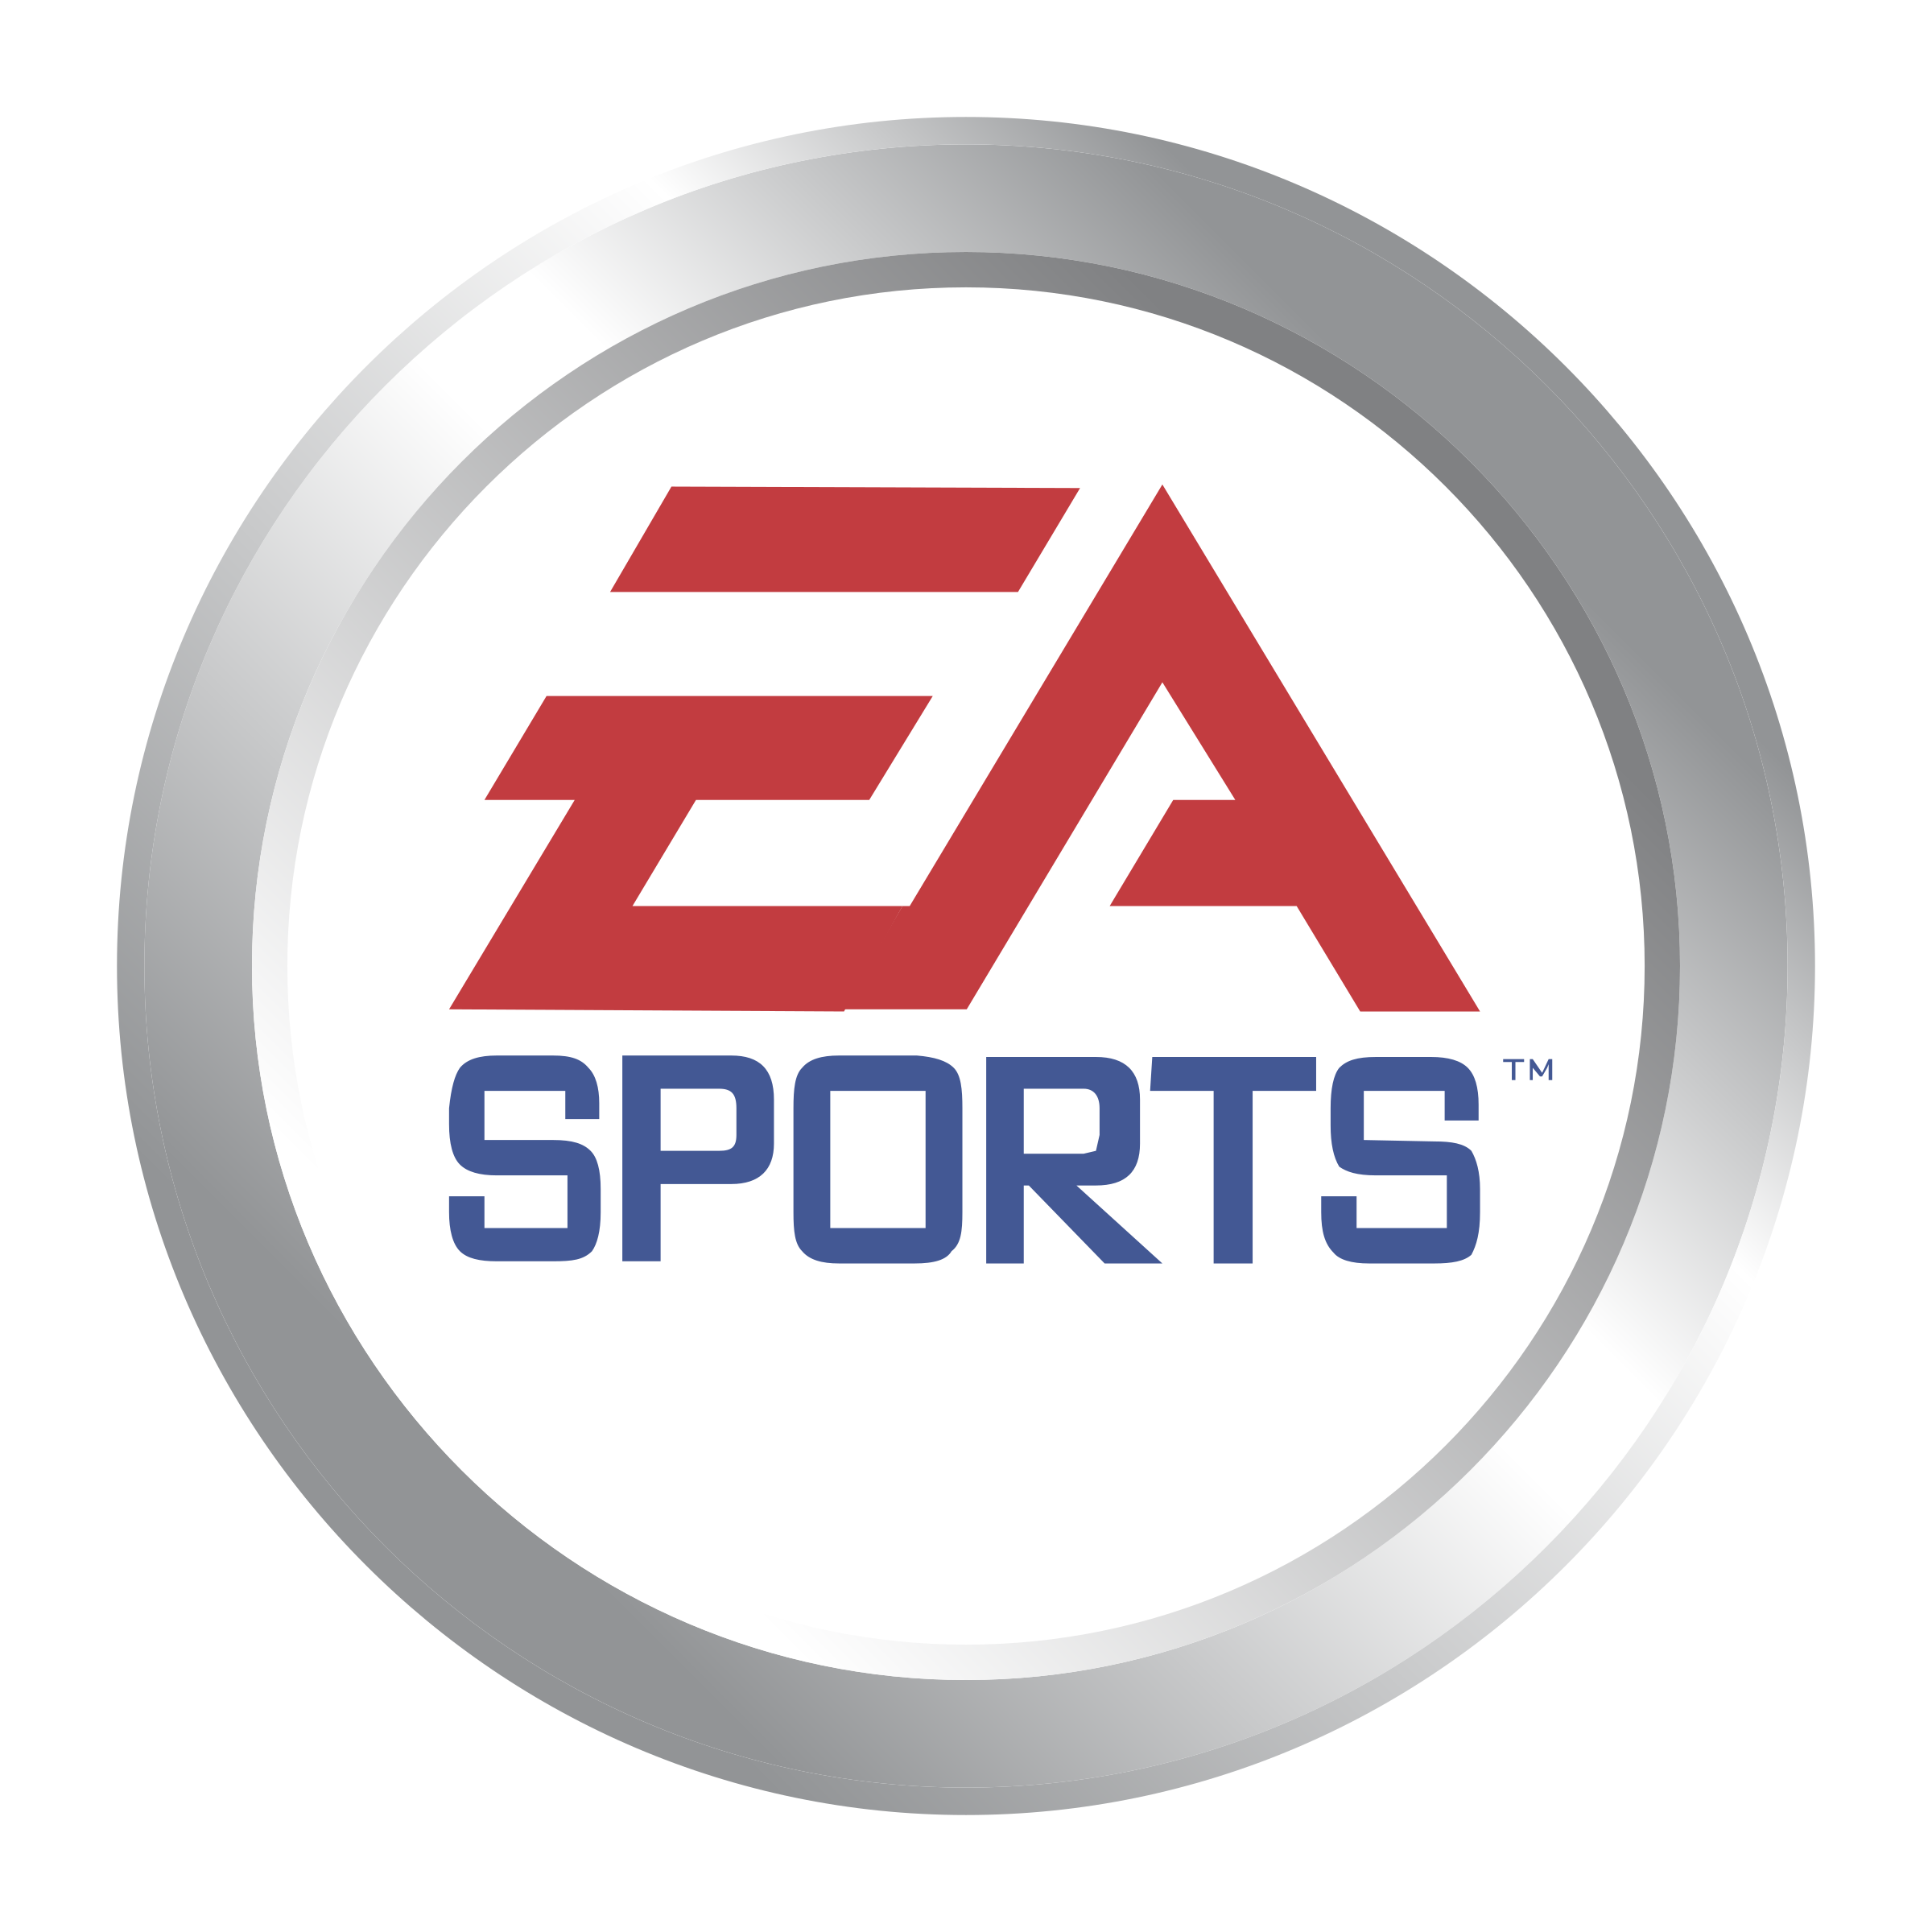 ea-sports-logo-png-transparent.png